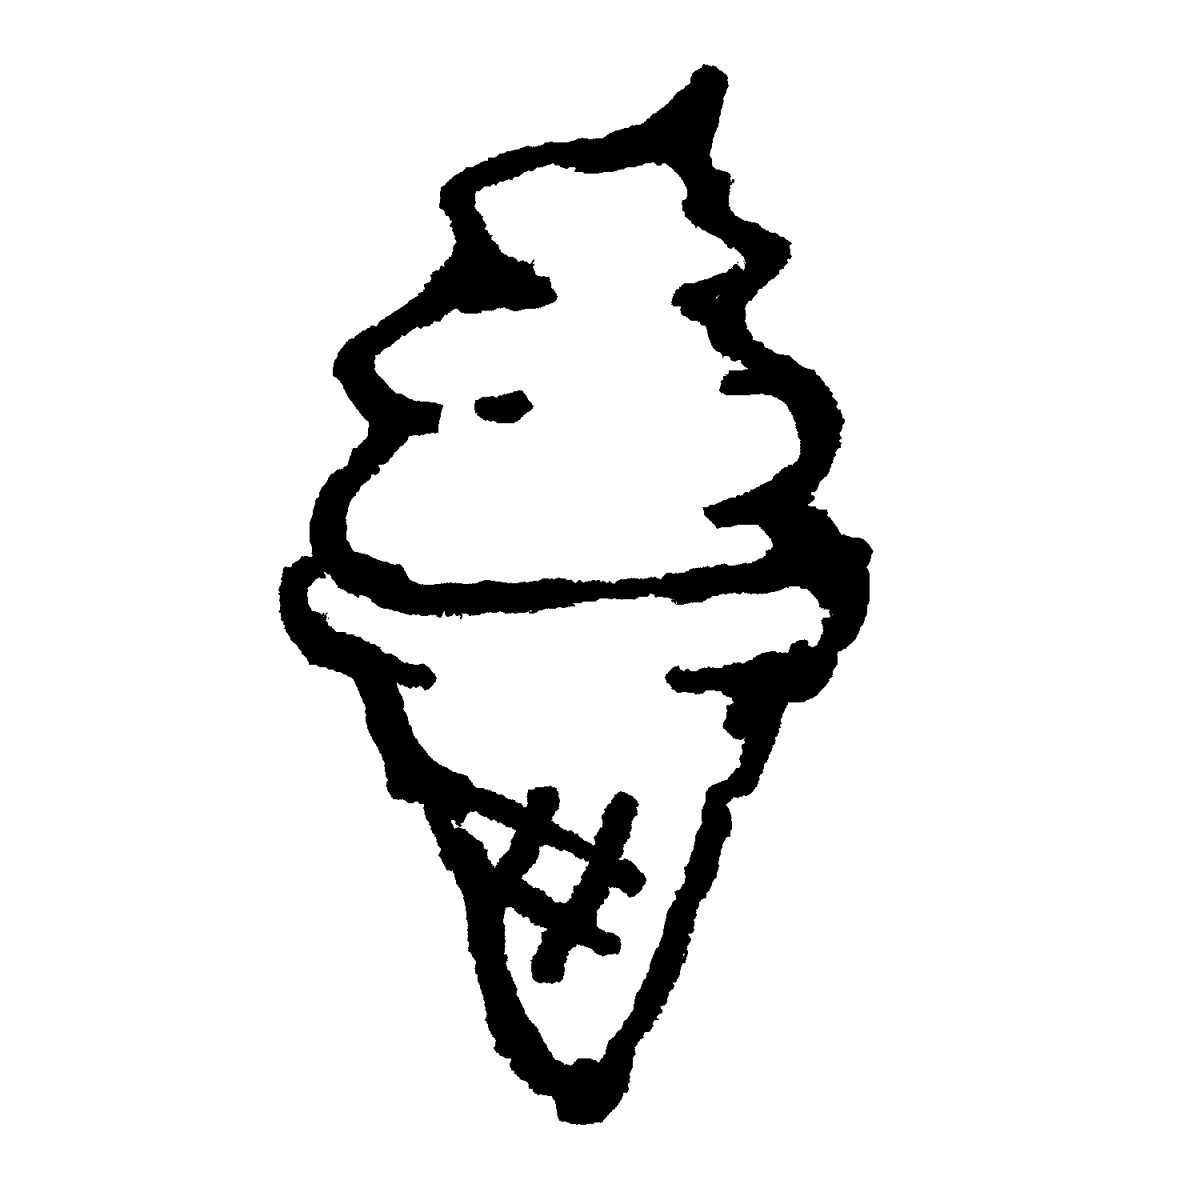 ソフトクリームのイラスト / Ice cream Illustration